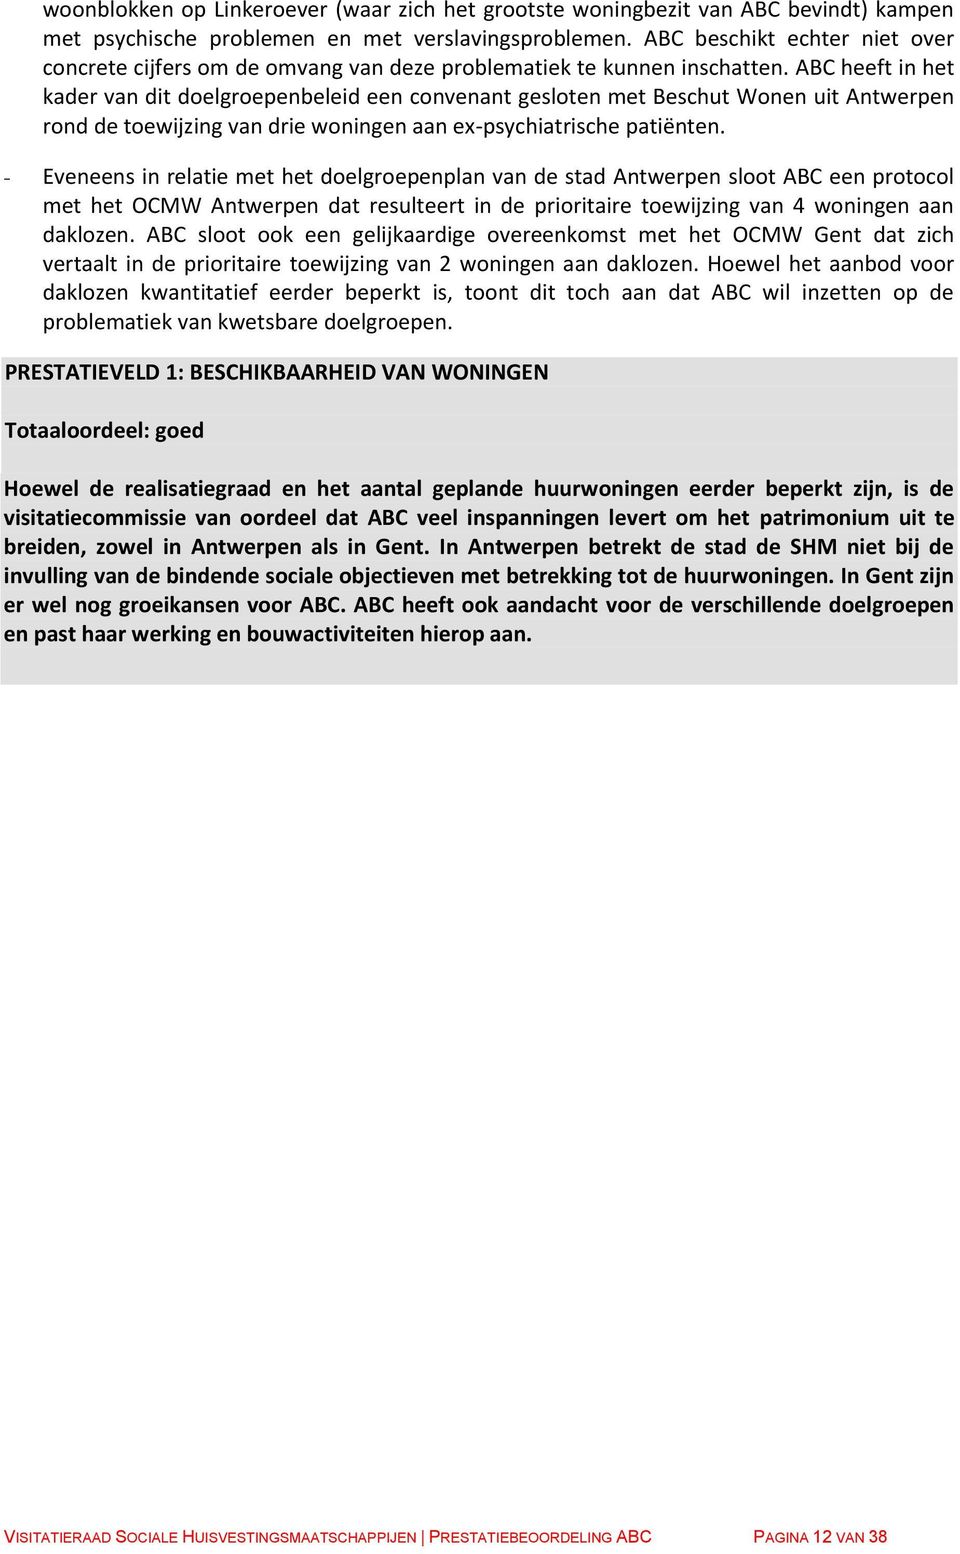 ABC heeft in het kader van dit doelgroepenbeleid een convenant gesloten met Beschut Wonen uit Antwerpen rond de toewijzing van drie woningen aan ex-psychiatrische patiënten.